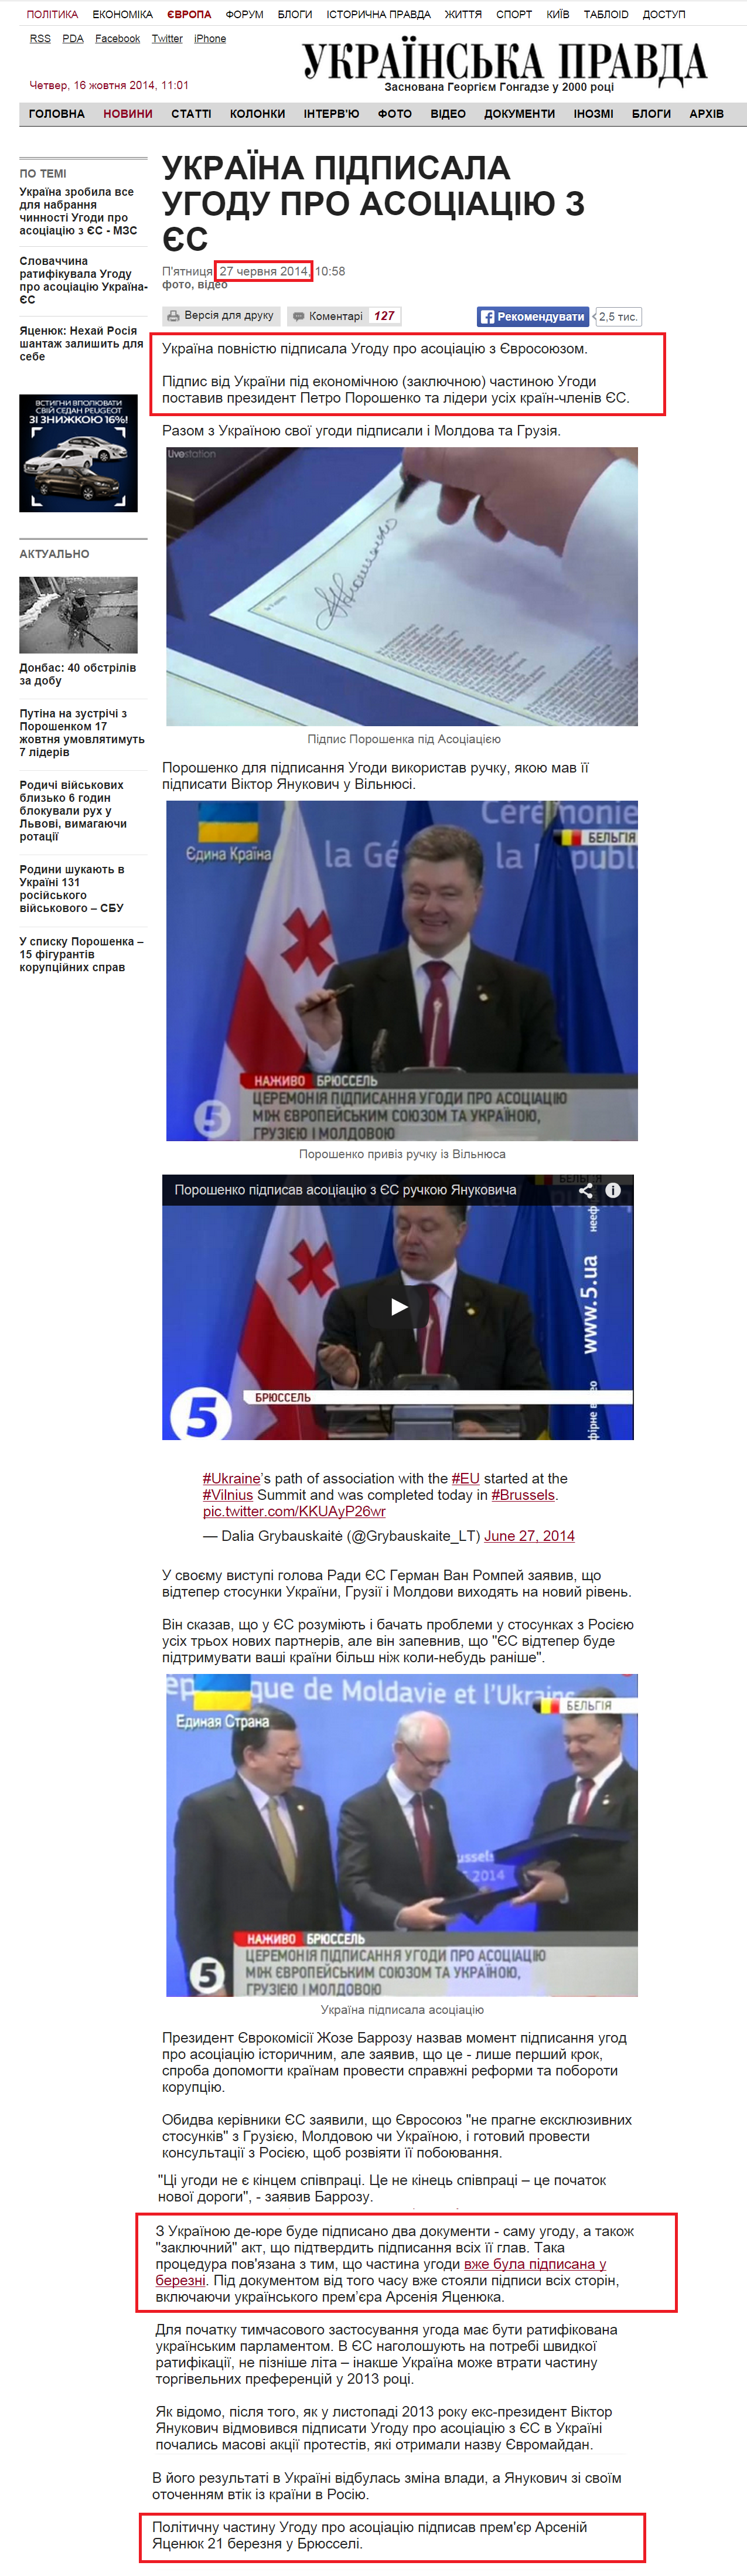 http://www.pravda.com.ua/news/2014/06/27/7030285/